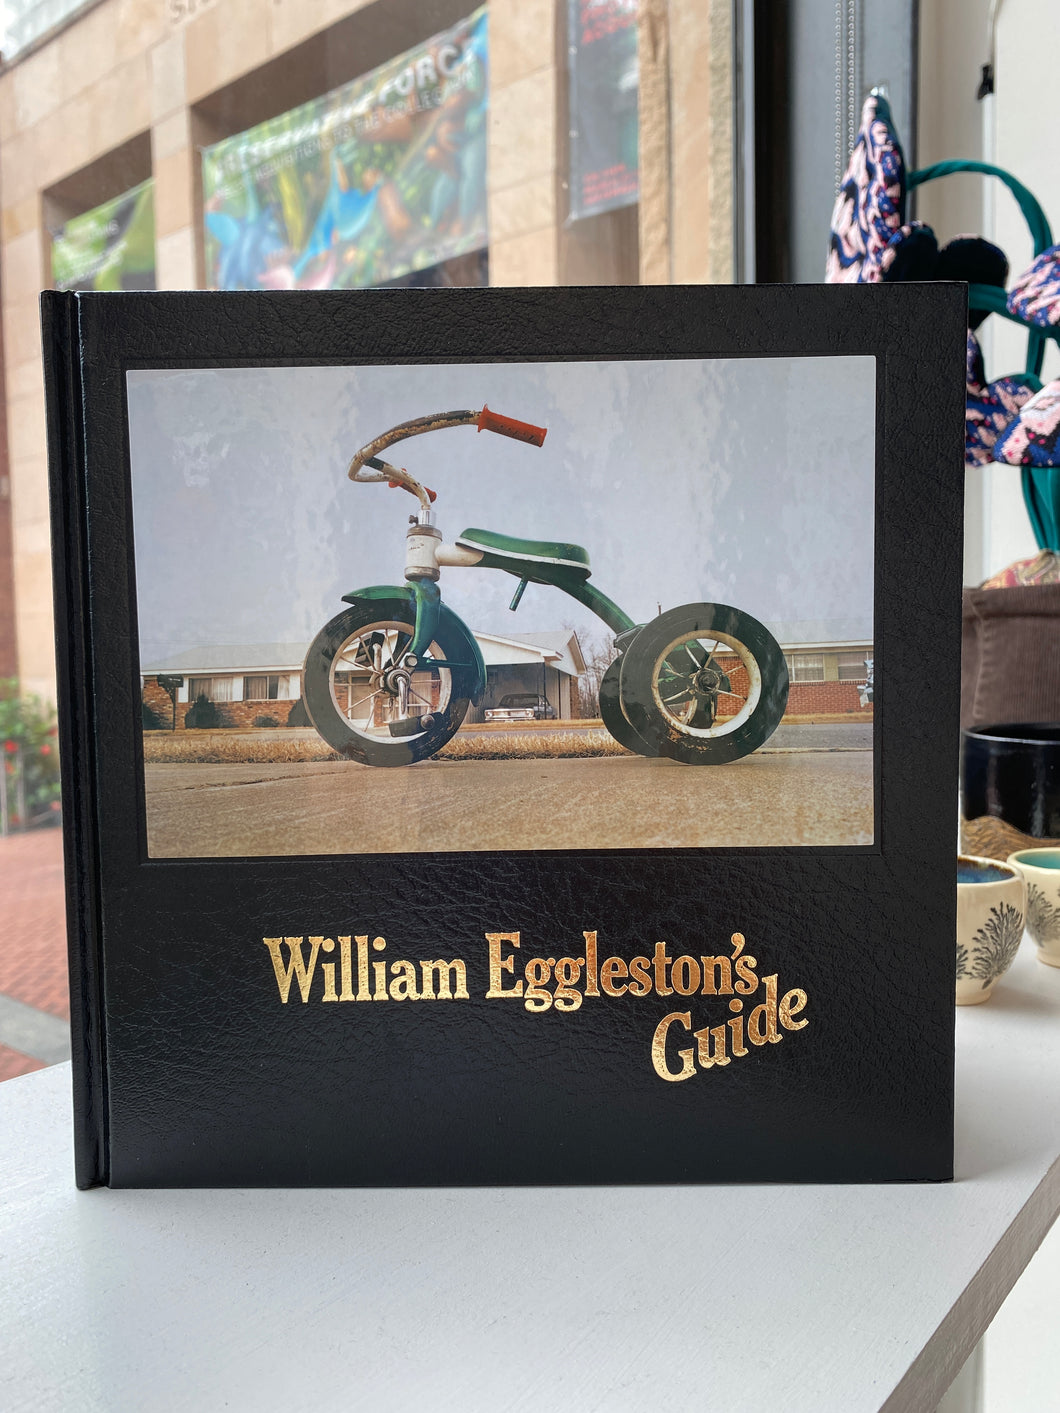 William Eggleston’s Guide